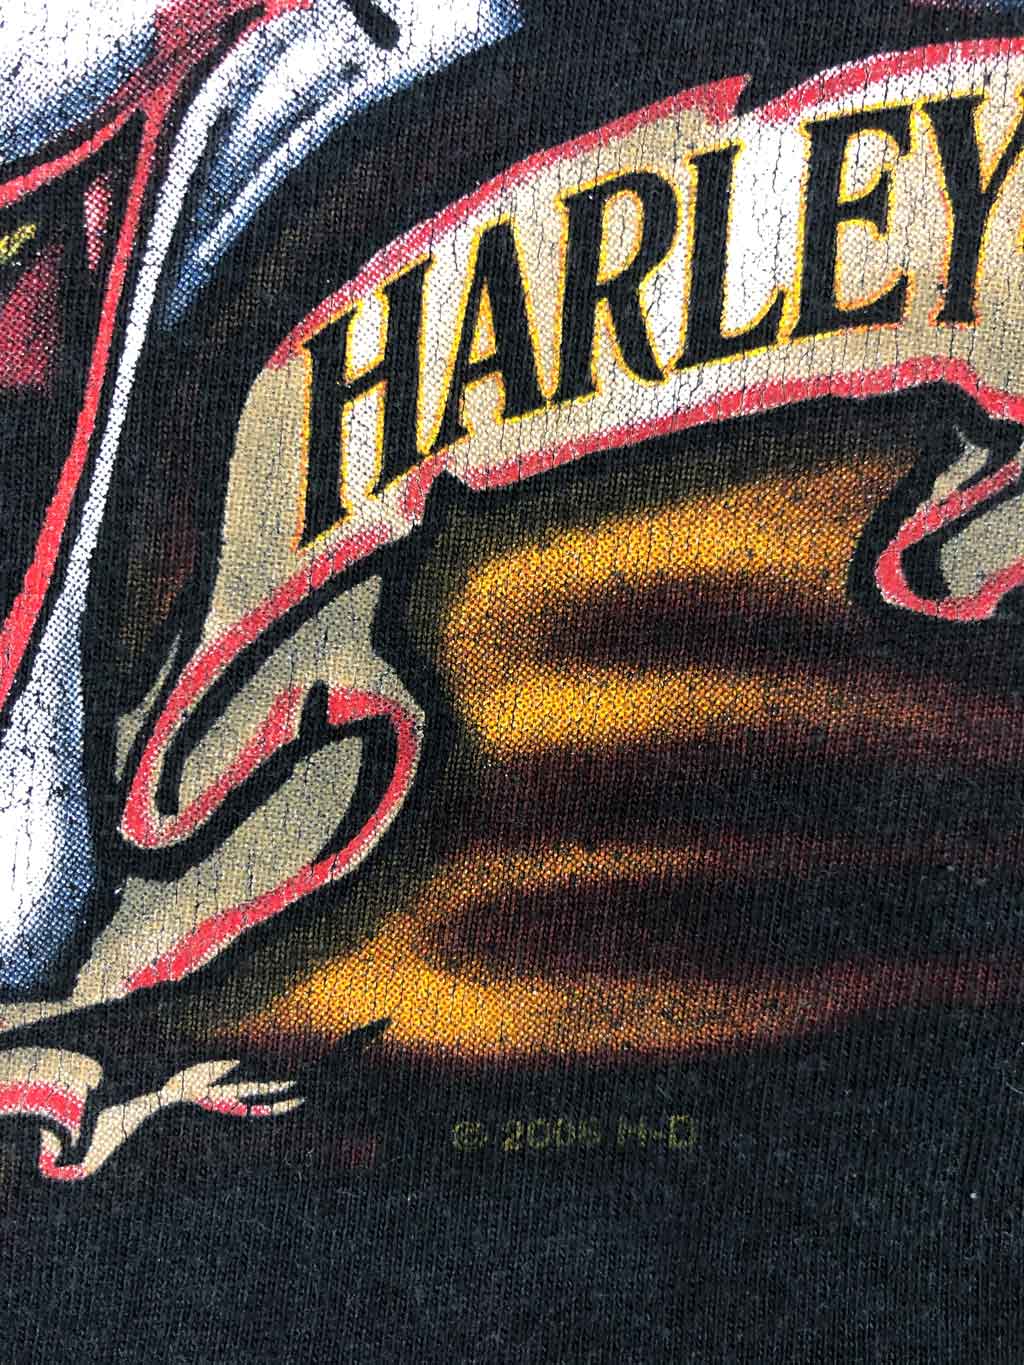 2008 HARLEY DAVIDSON Retro T-Shirt (L)